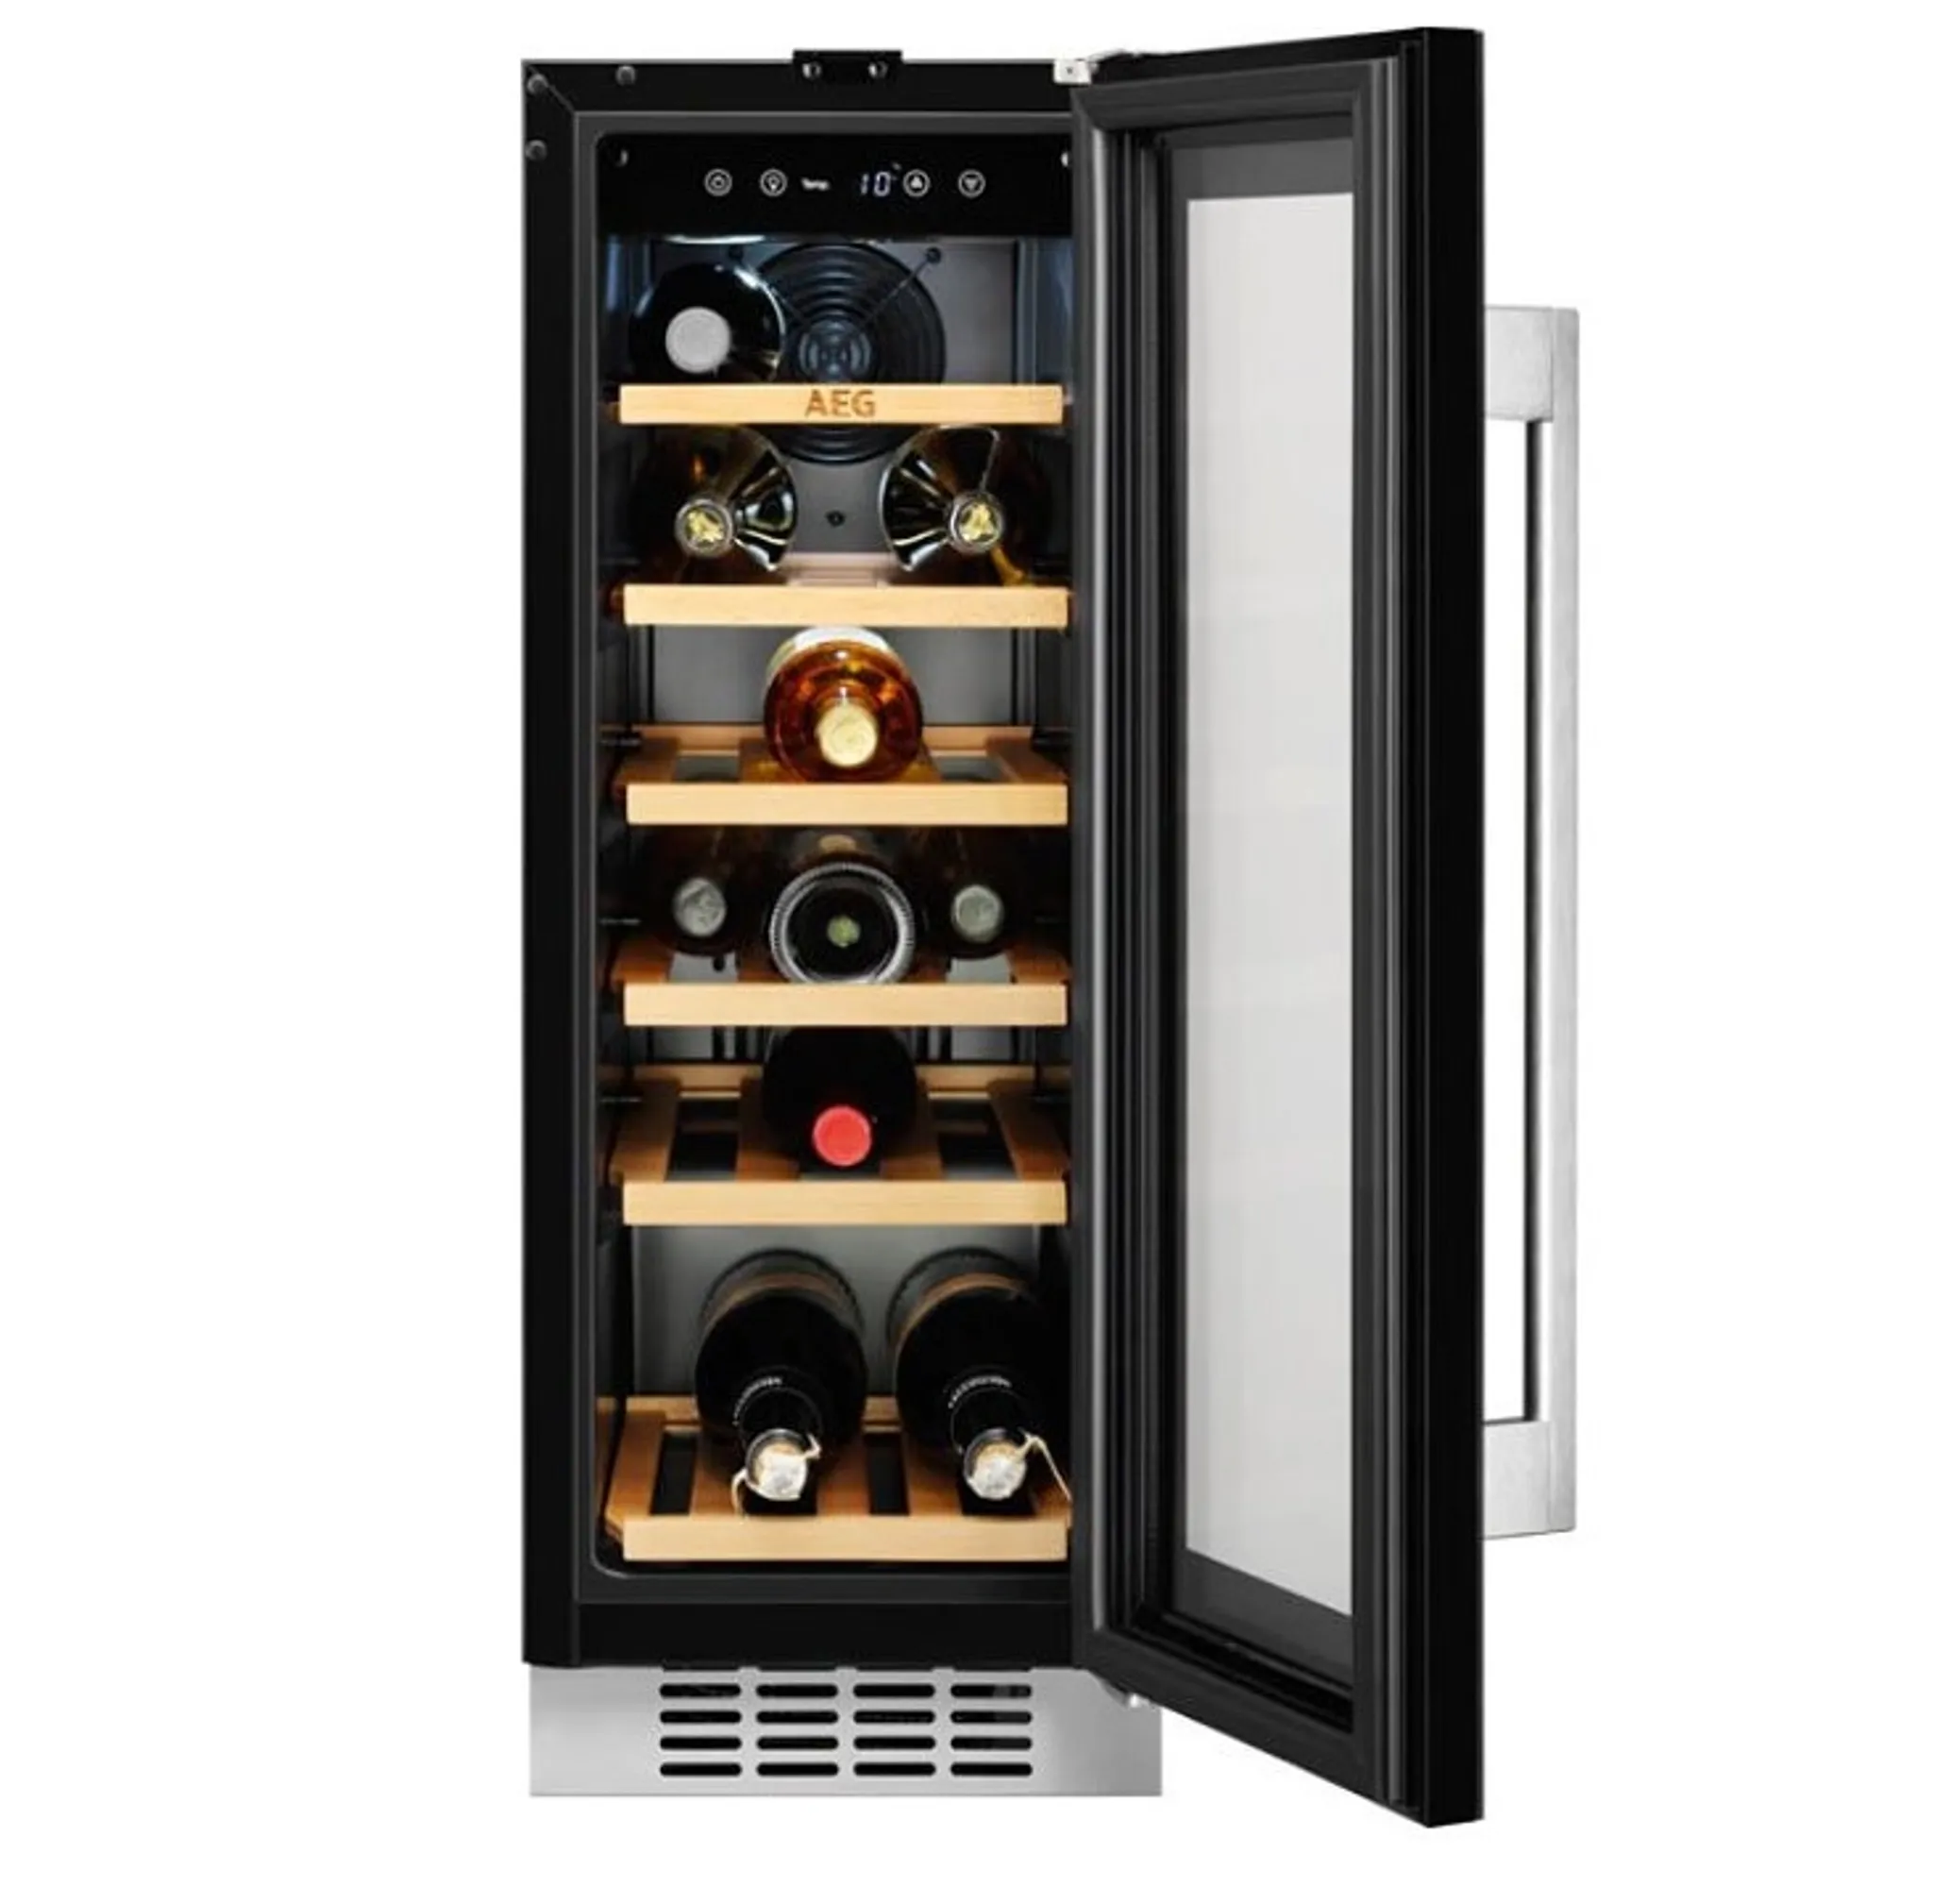 Винный холодильник встроенный. Встраиваемый винный шкаф Electrolux ERW 0673 AOA. Встраиваемый винный шкаф AEG SWB 66001 DG. Винный шкаф AEG swb63001dg. Винный шкаф Электролюкс.